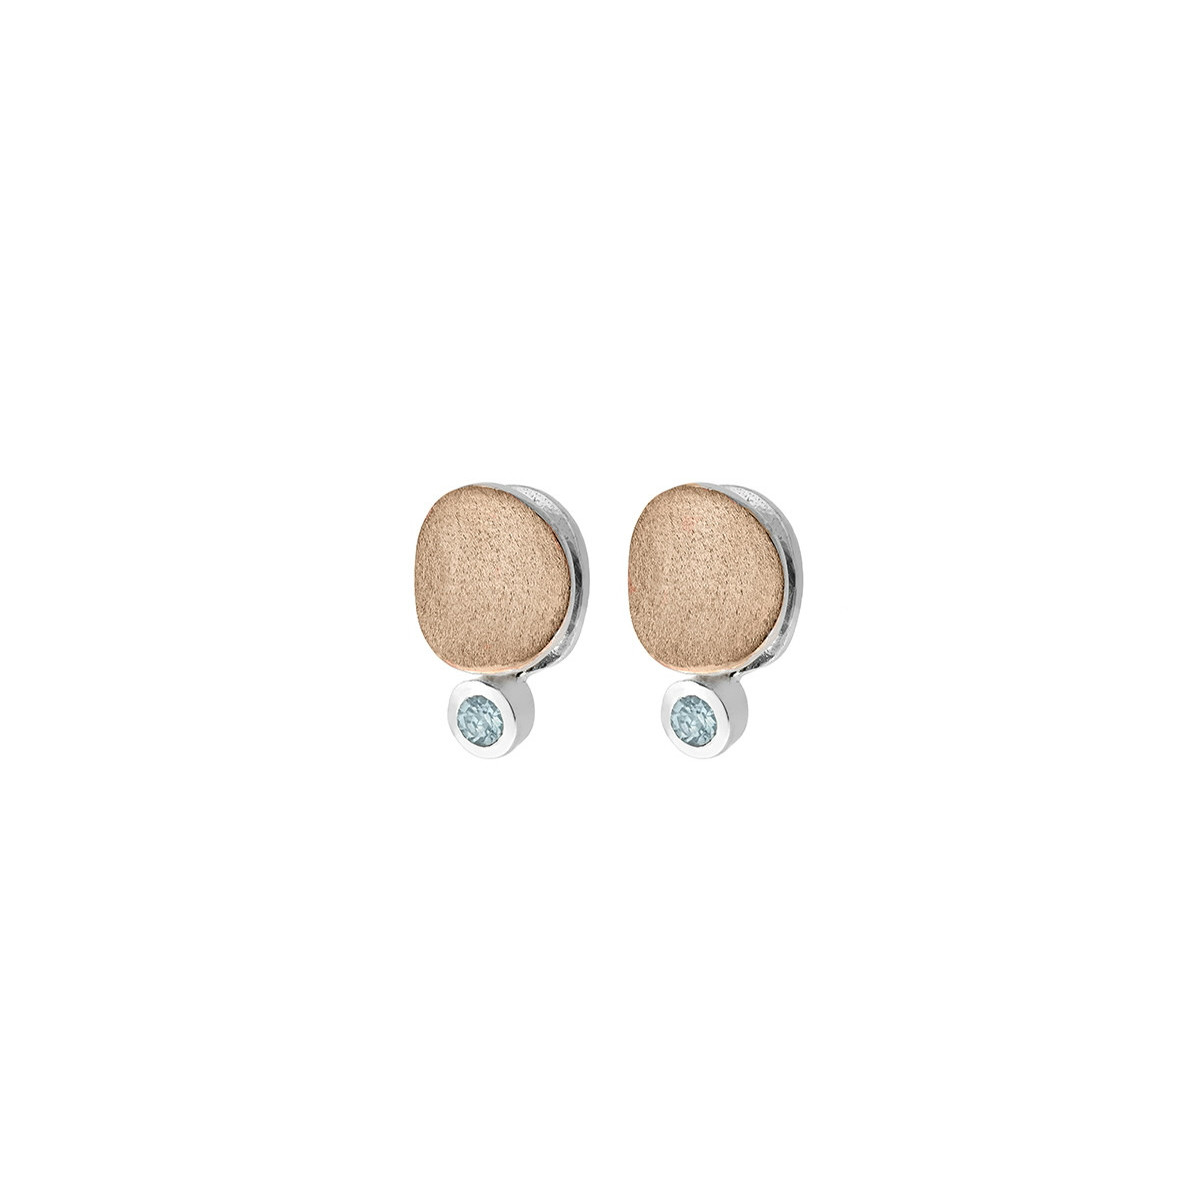 MOON Earrings in Silver. 18 kt Gold Vermeil